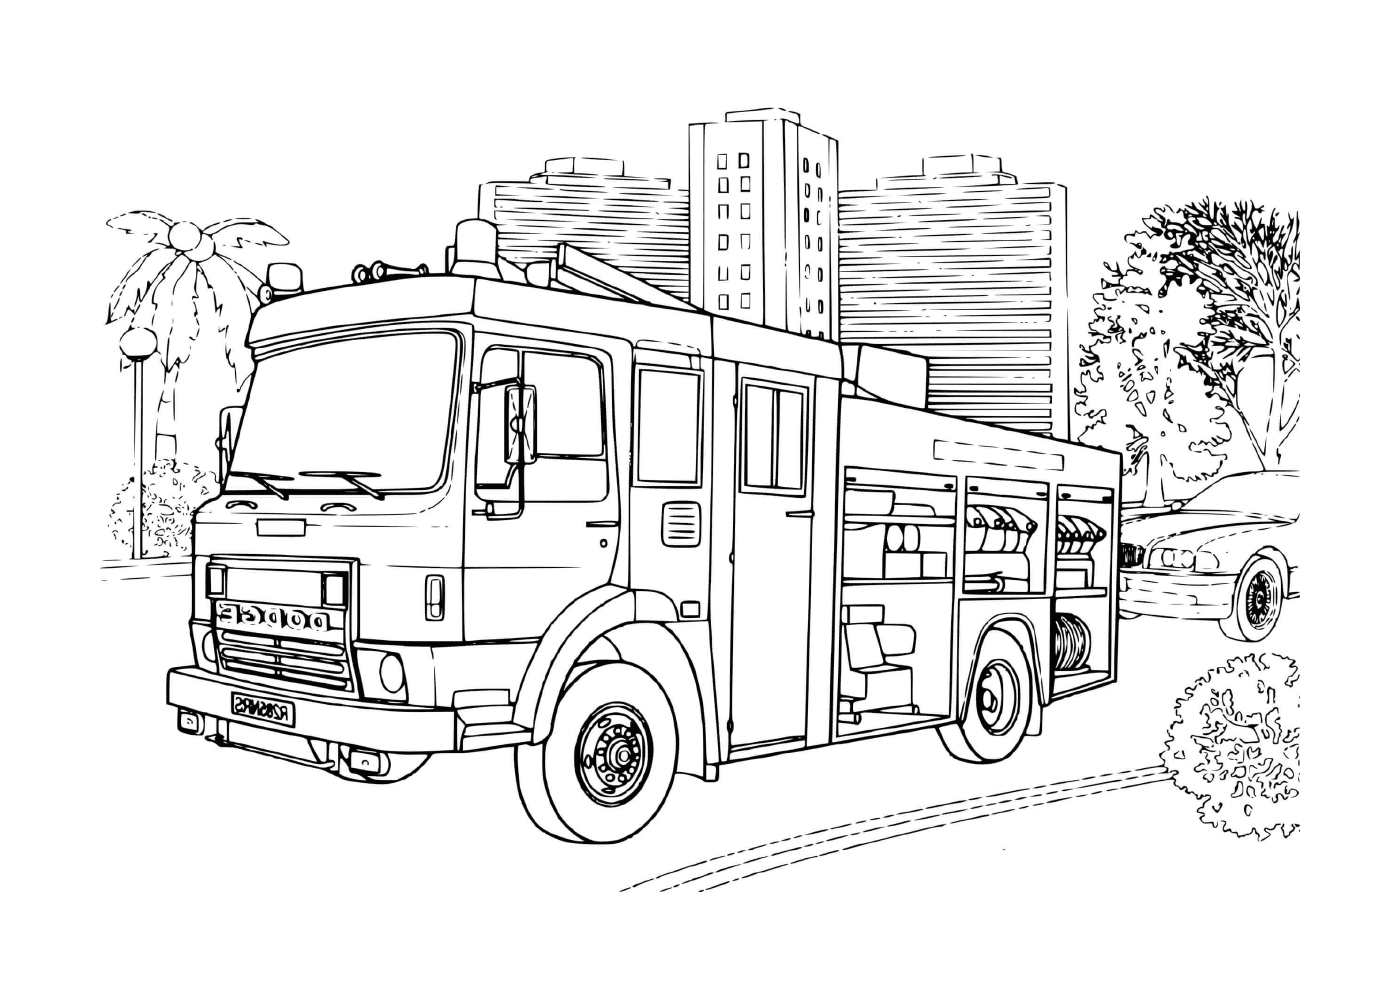  a Пожарная машина " Додж " 